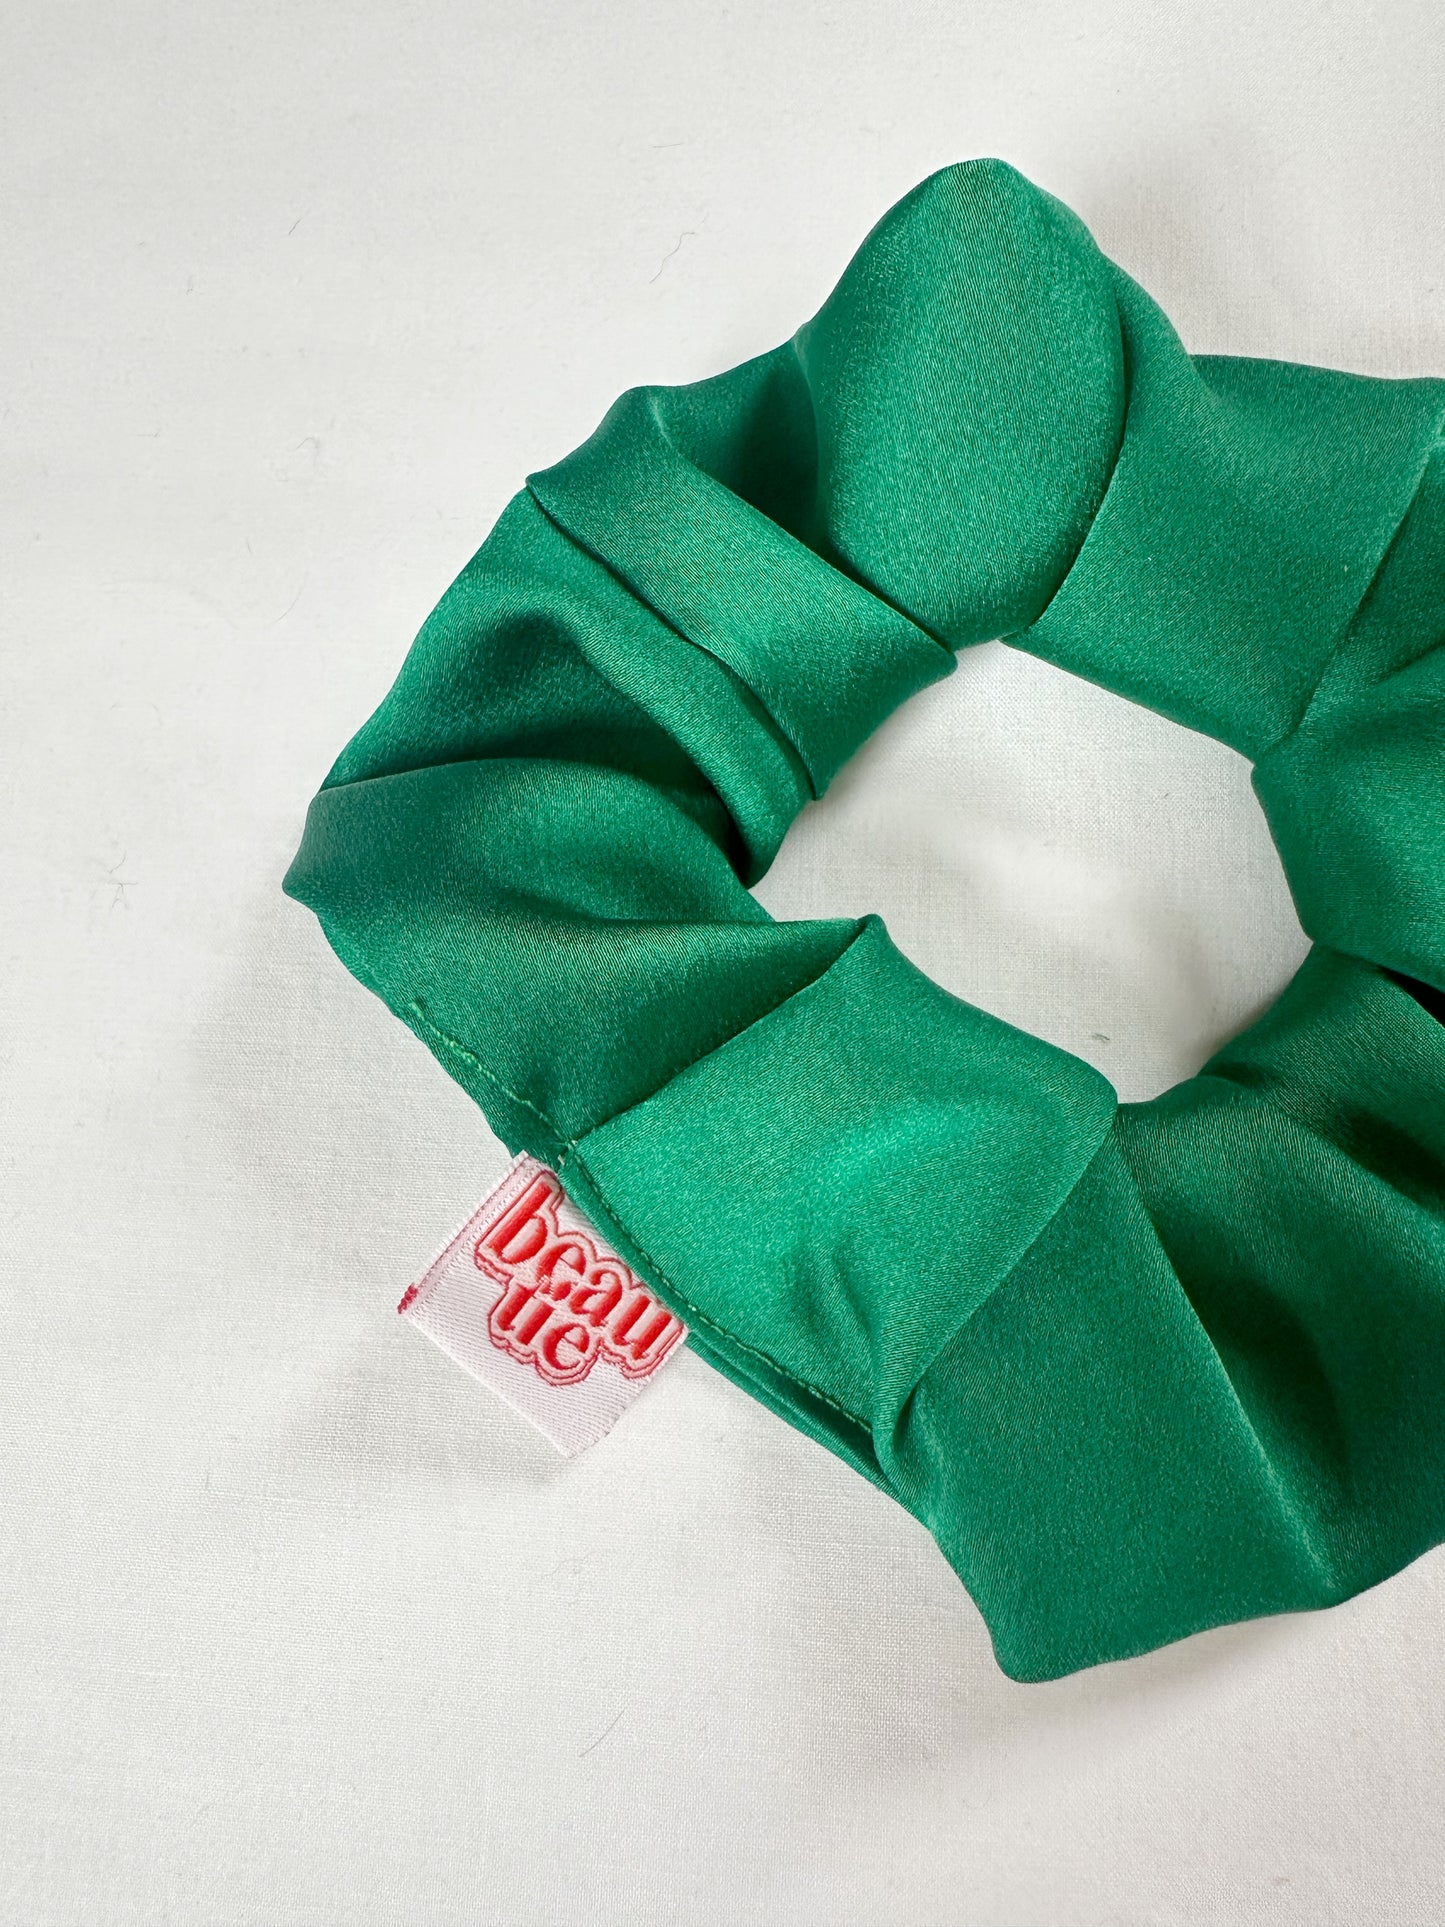 OG scrunchie in emerald green silk